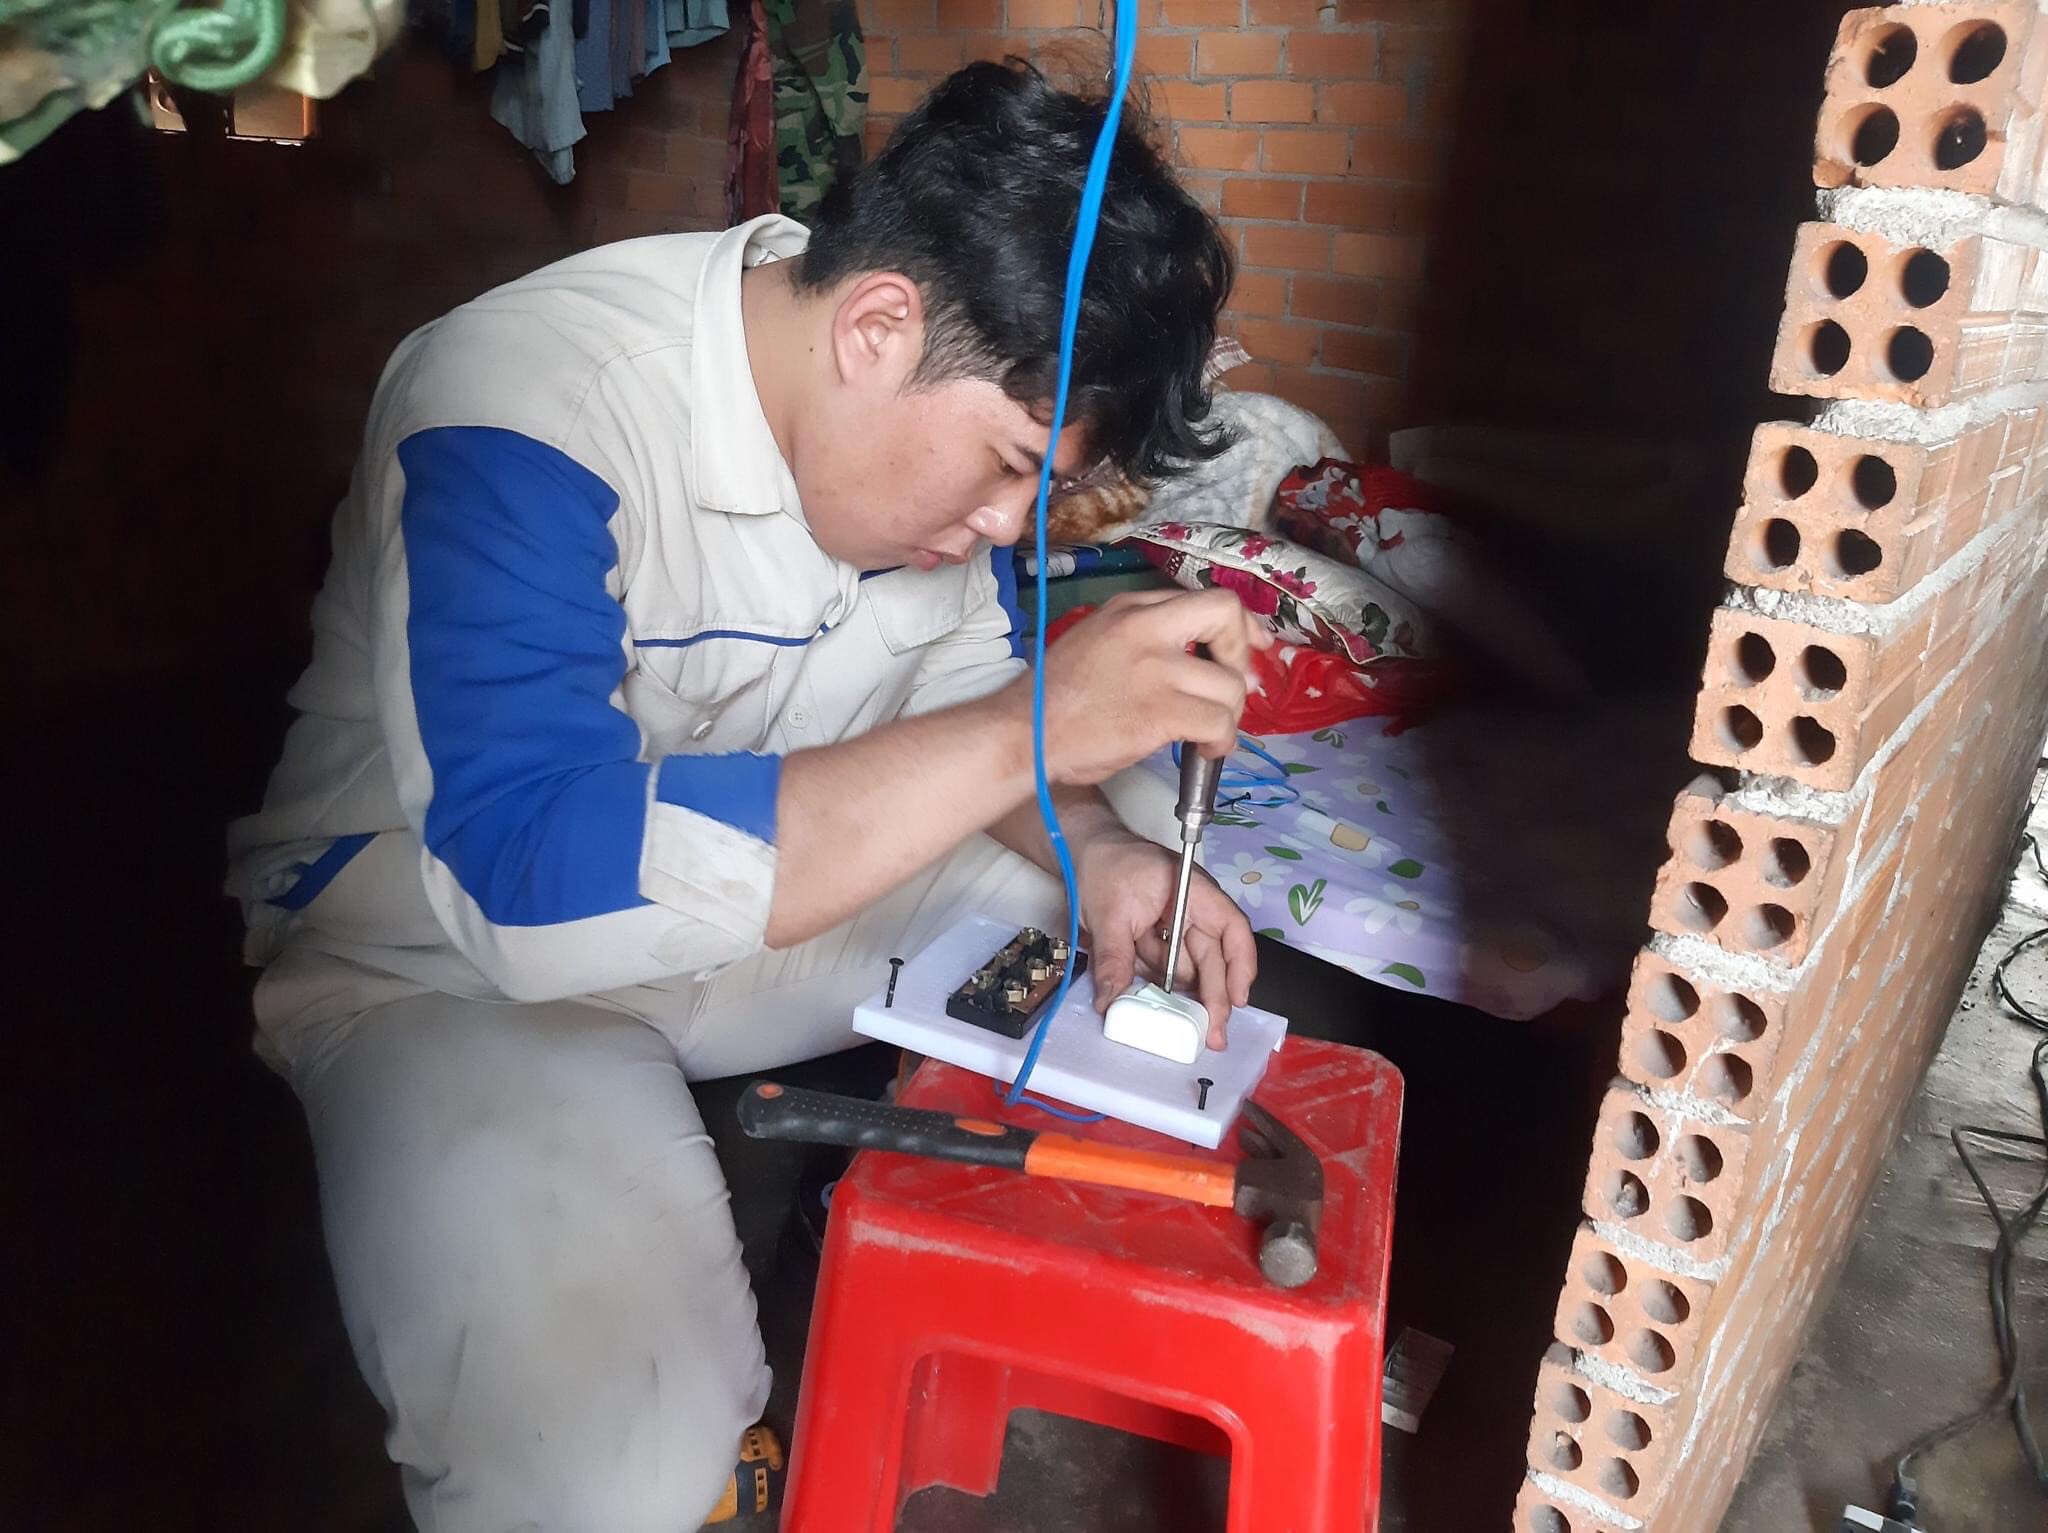 SV Nguyễn Quốc Việt, Trường CĐ Kỹ thuật Công nghệ Bà Rịa-Vũng Tàu tham gia sửa chữa điện cho người dân nghèo, đồng bào dân tộc.